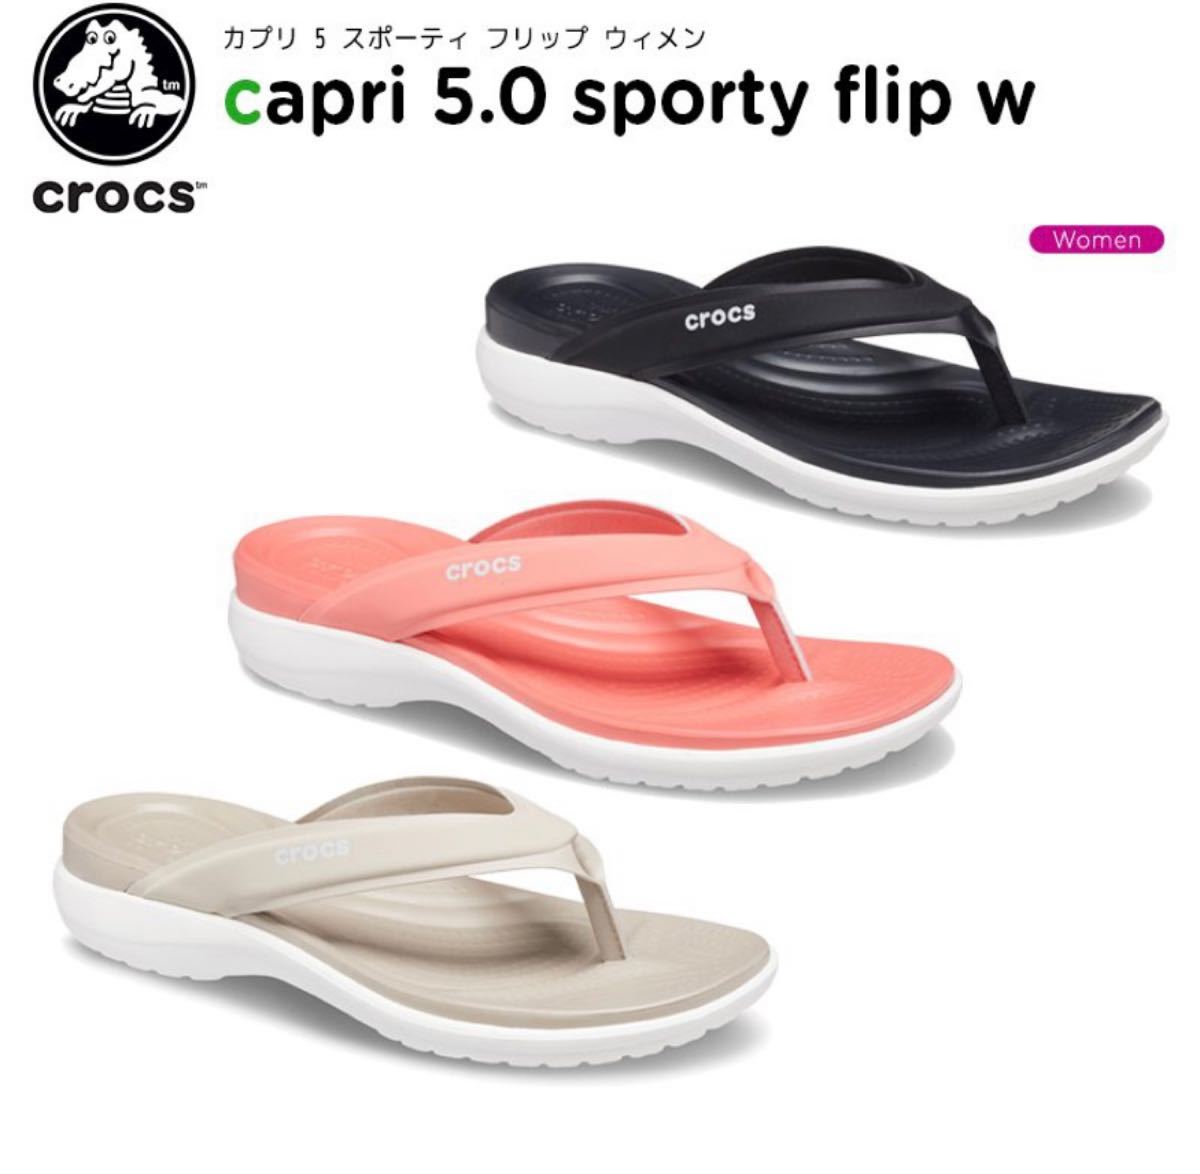 クロックス crocs カプリ 5.0 スポーティ フリップ ウィメン capri 5 sporty flip サンダル 新品